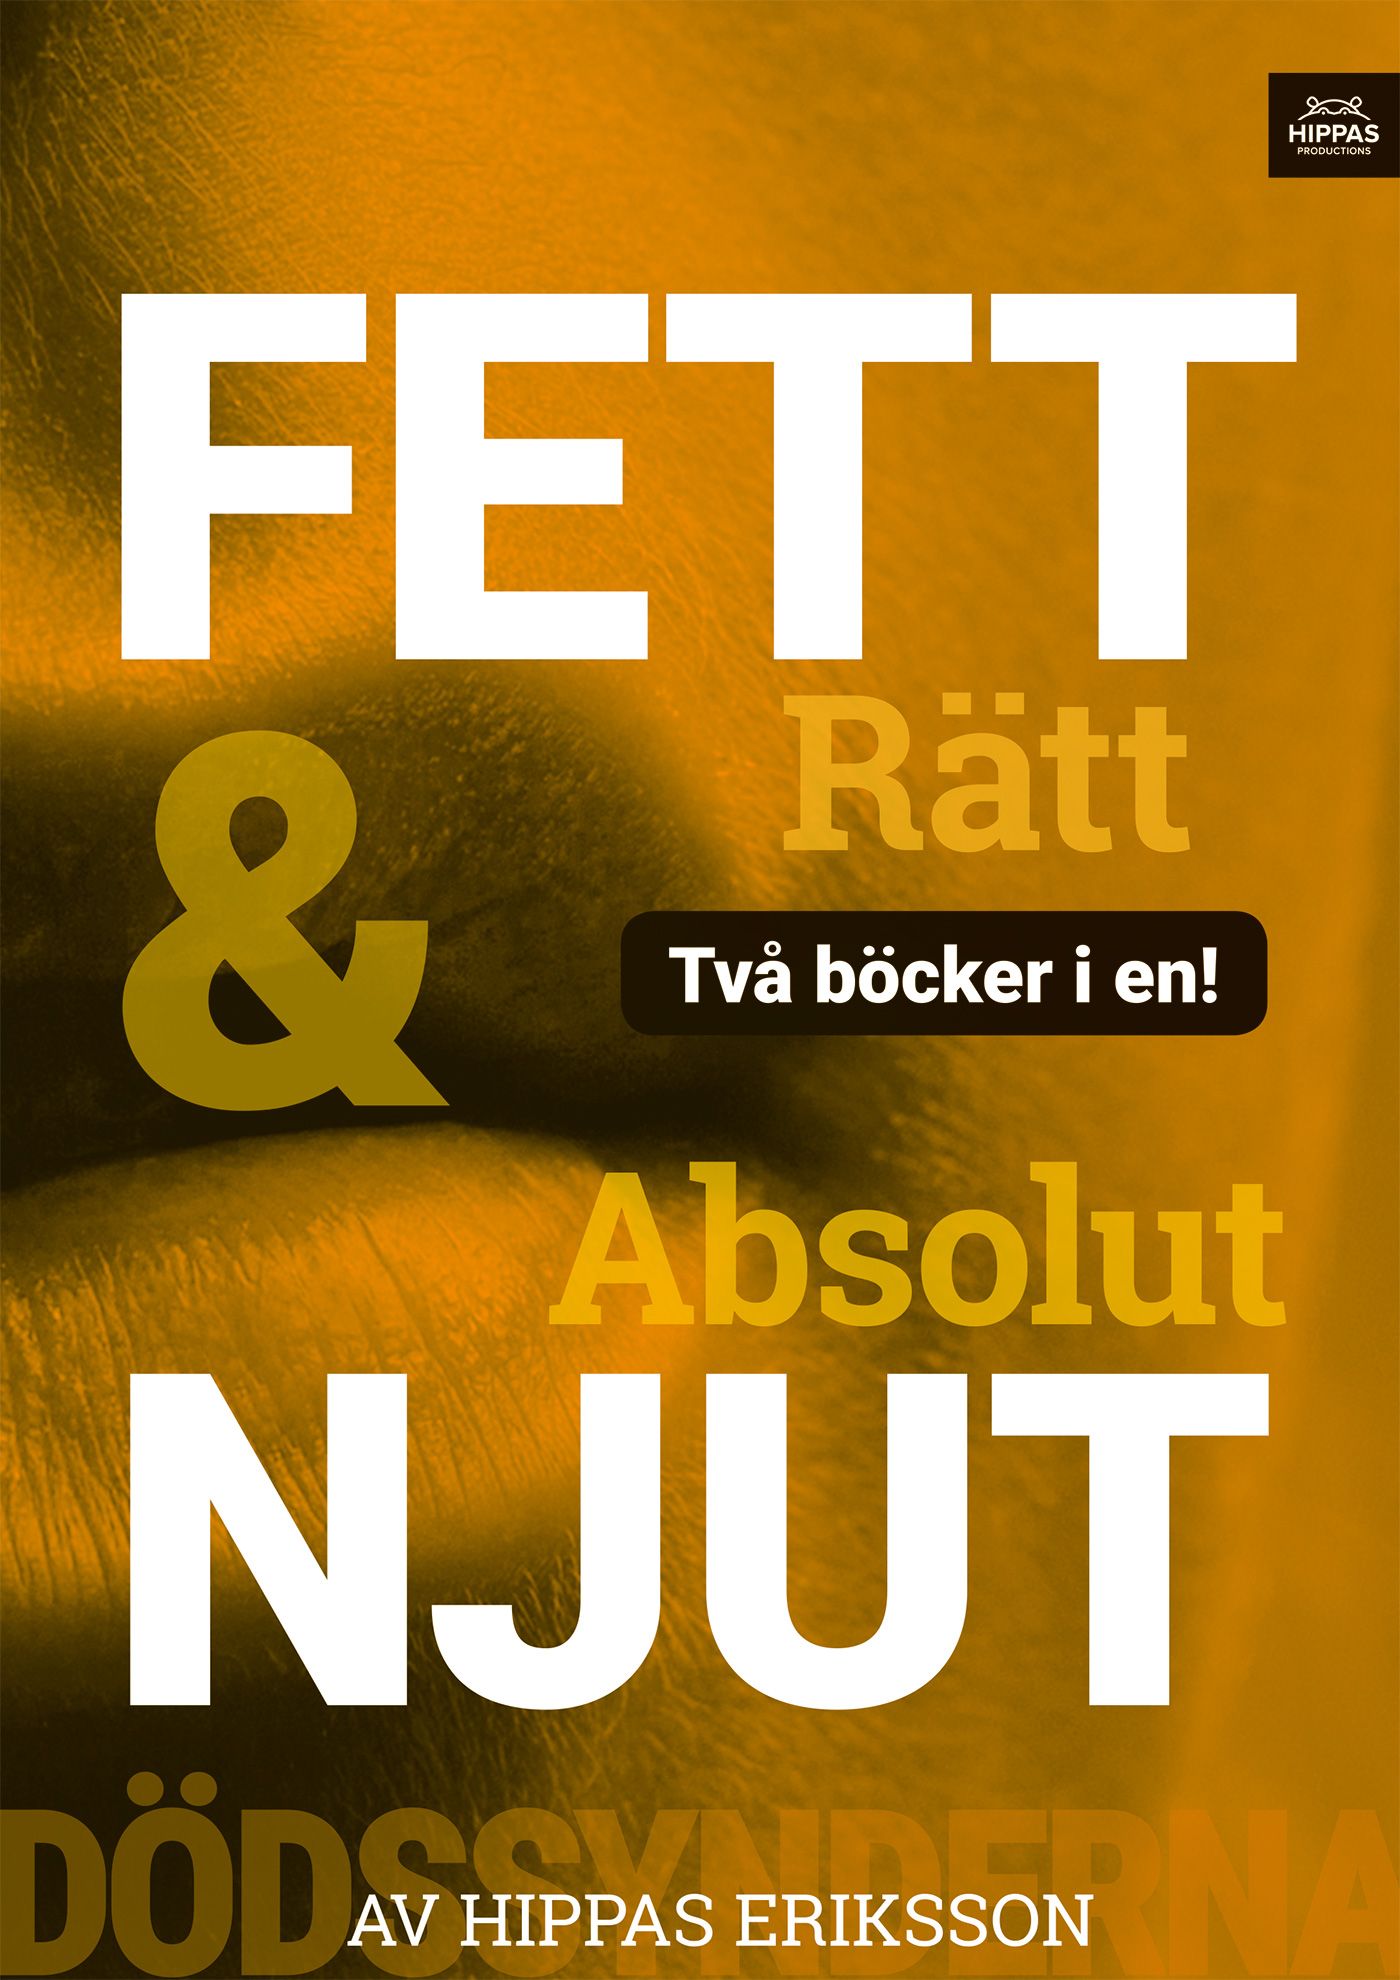 Absolut njut / Fett rätt, e-bok av Hippas Eriksson